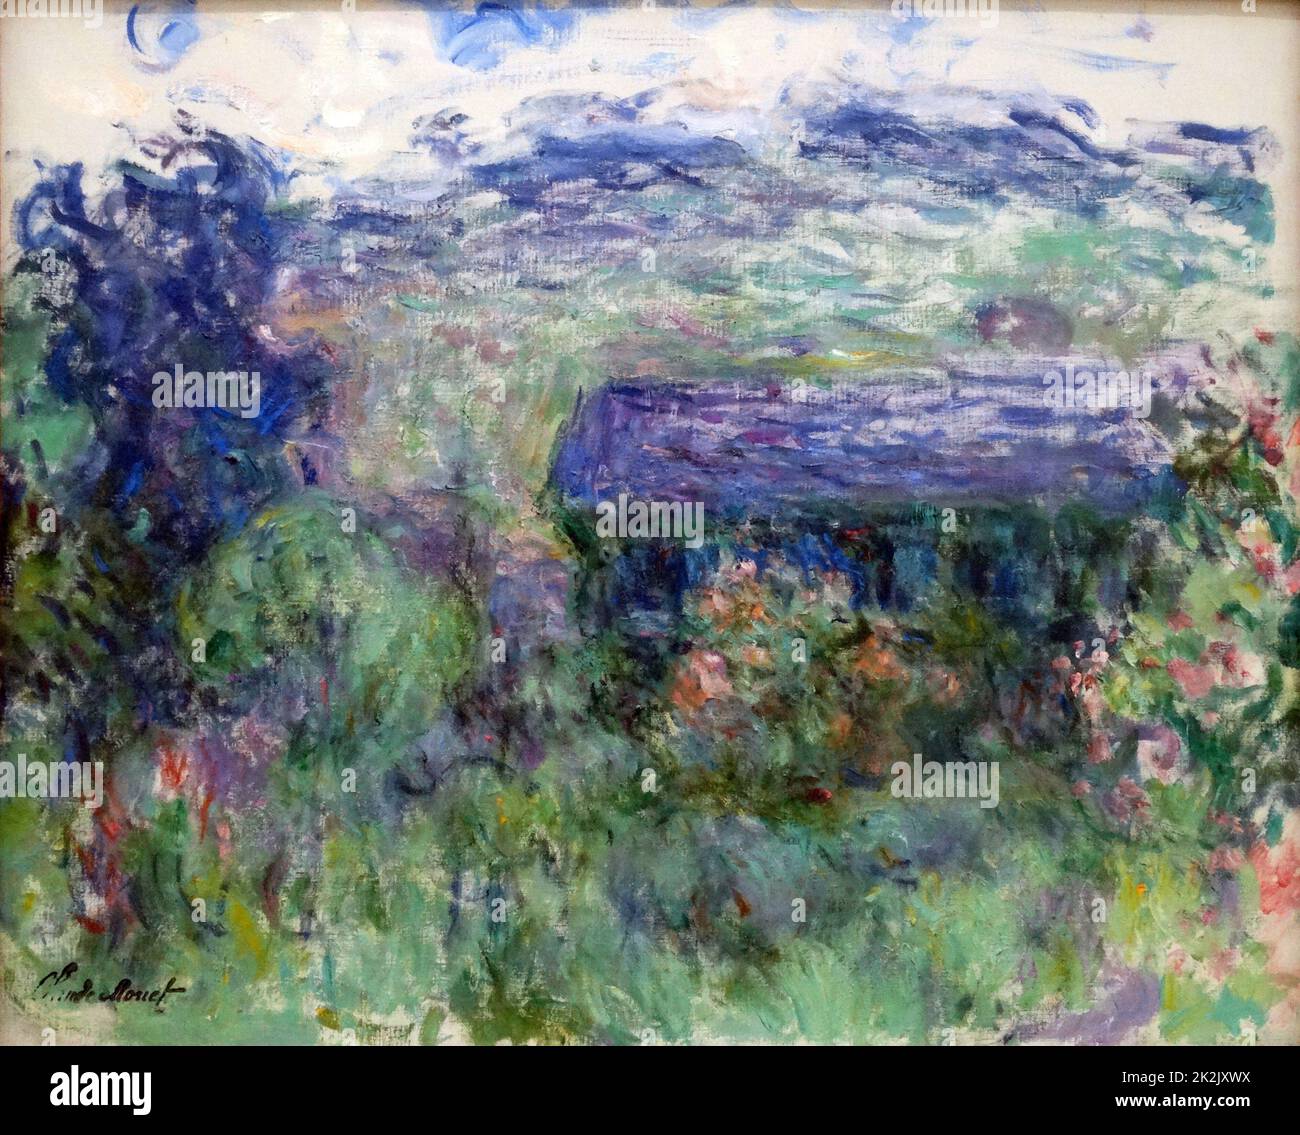 La Maison à travers les Roses. 'La Maison vue à travers les Roses' (huile sur toile) par Claude Monet. 1925-1926 Stedelijk Museum of Modern Art, Amsterdam Banque D'Images